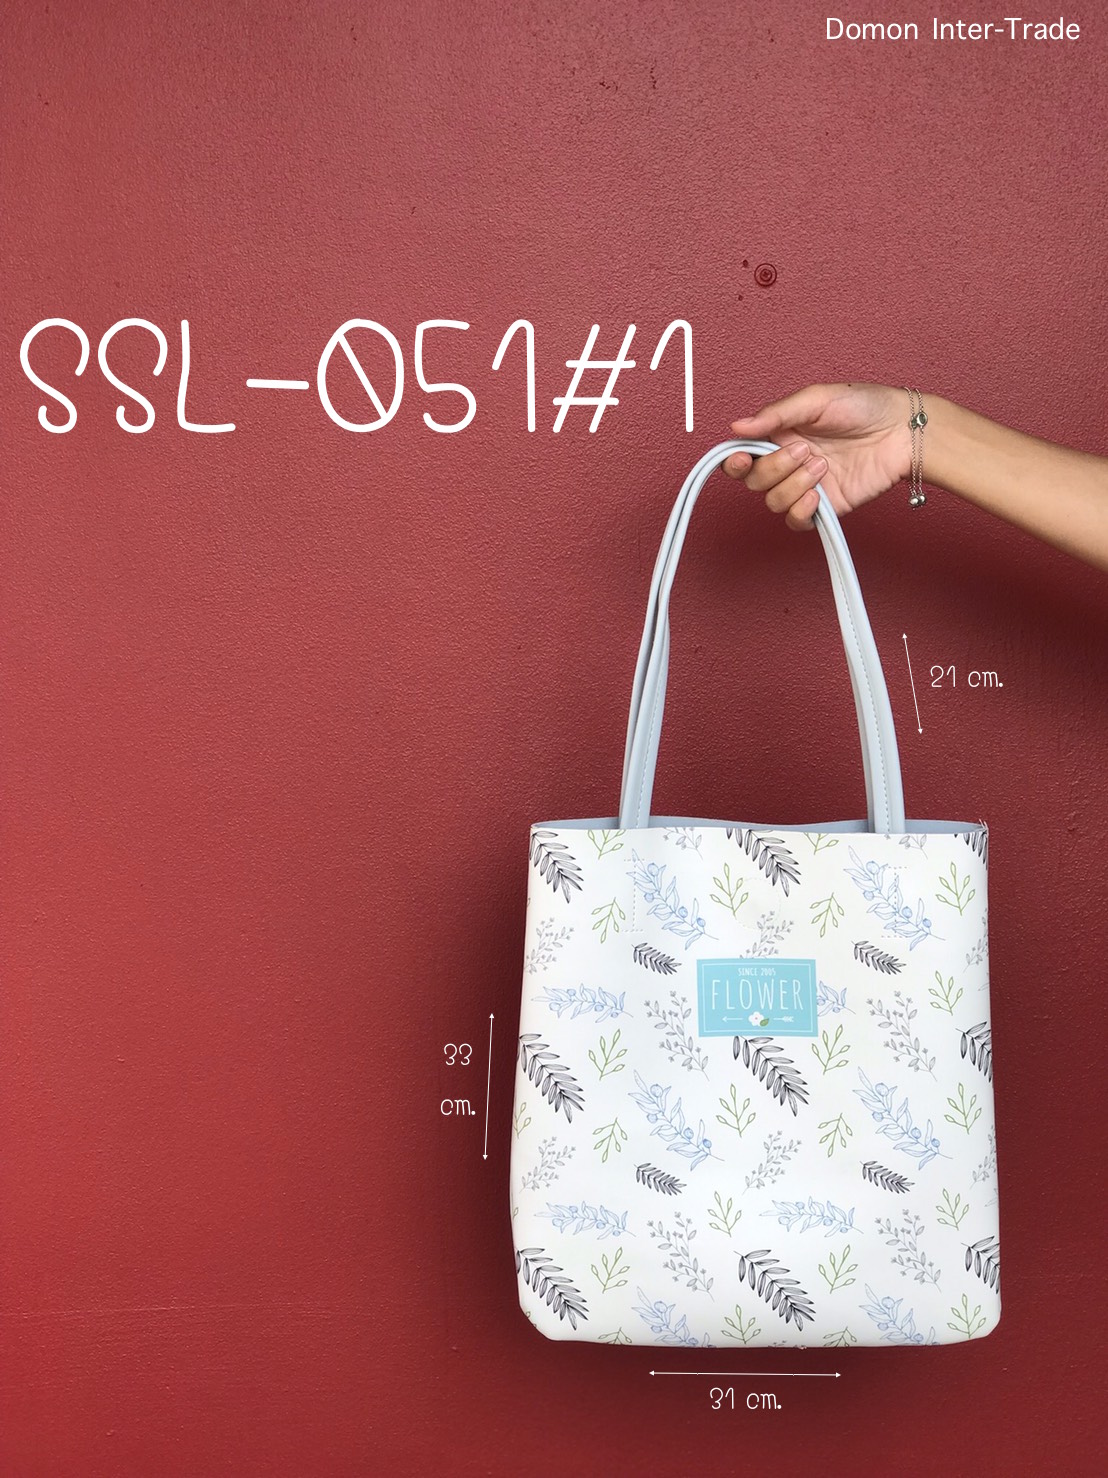 กระเป๋าสะพายหนังเทียม  31x33 cm. หูยาว 21 cm.